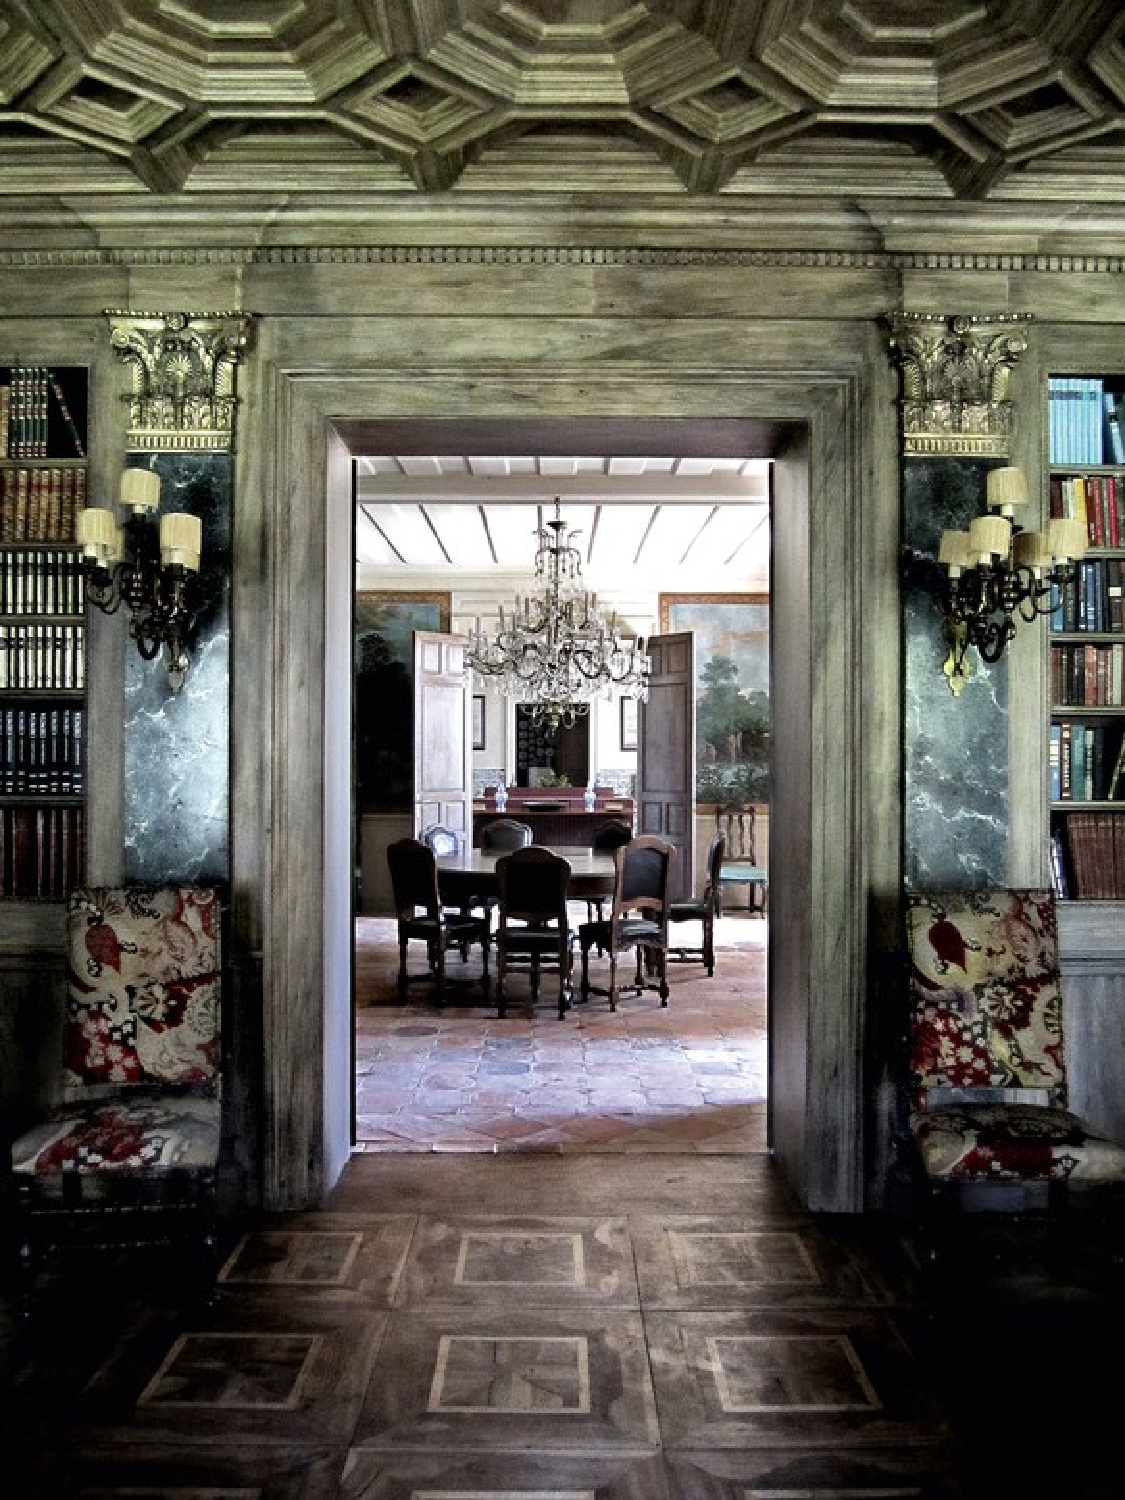 Studio Peregalli designed rustic luxe villa interior featured in Gagosian. #oldworldstyle #timelessdesign #Milandesigner